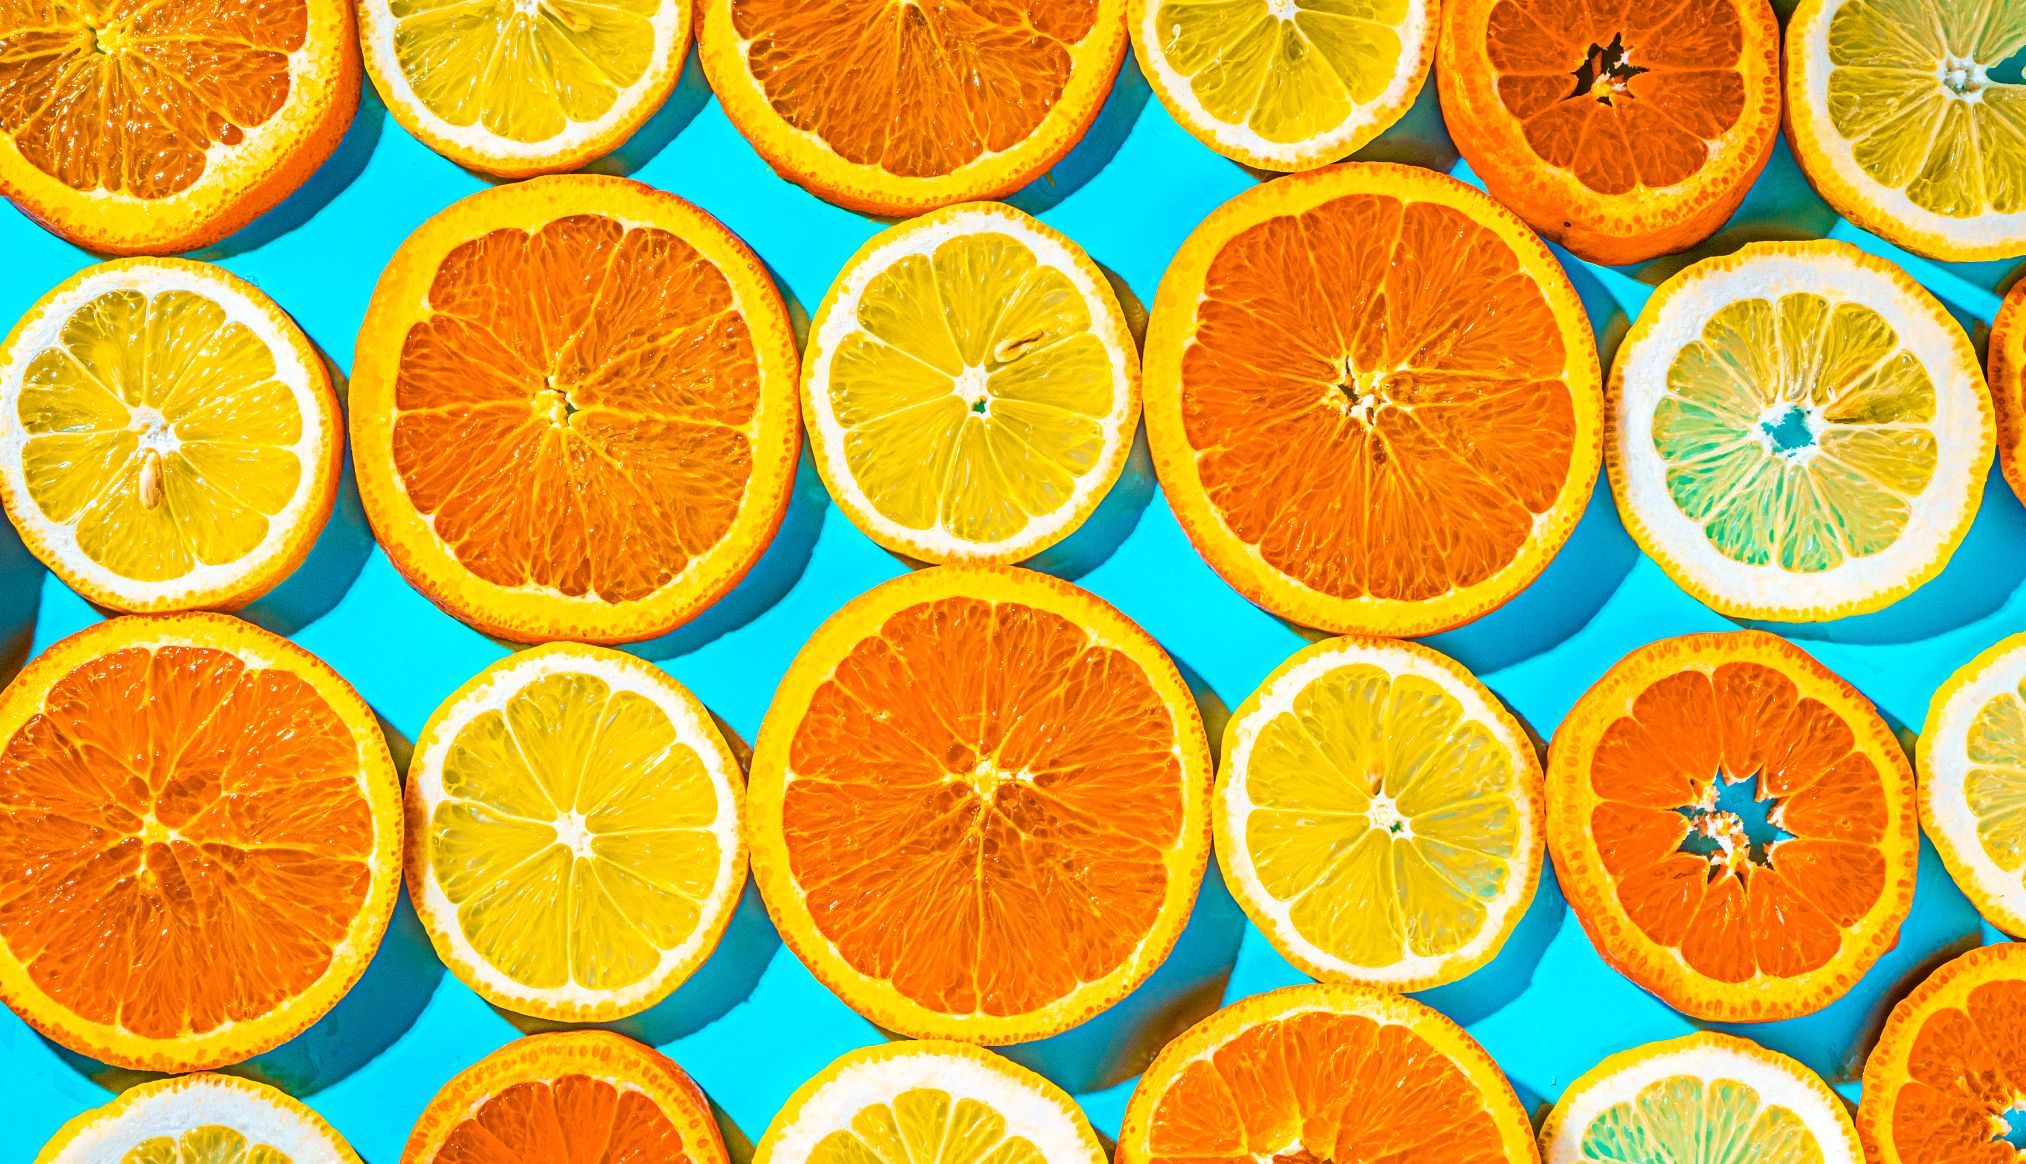 sliced oranges and lemons on a blue background